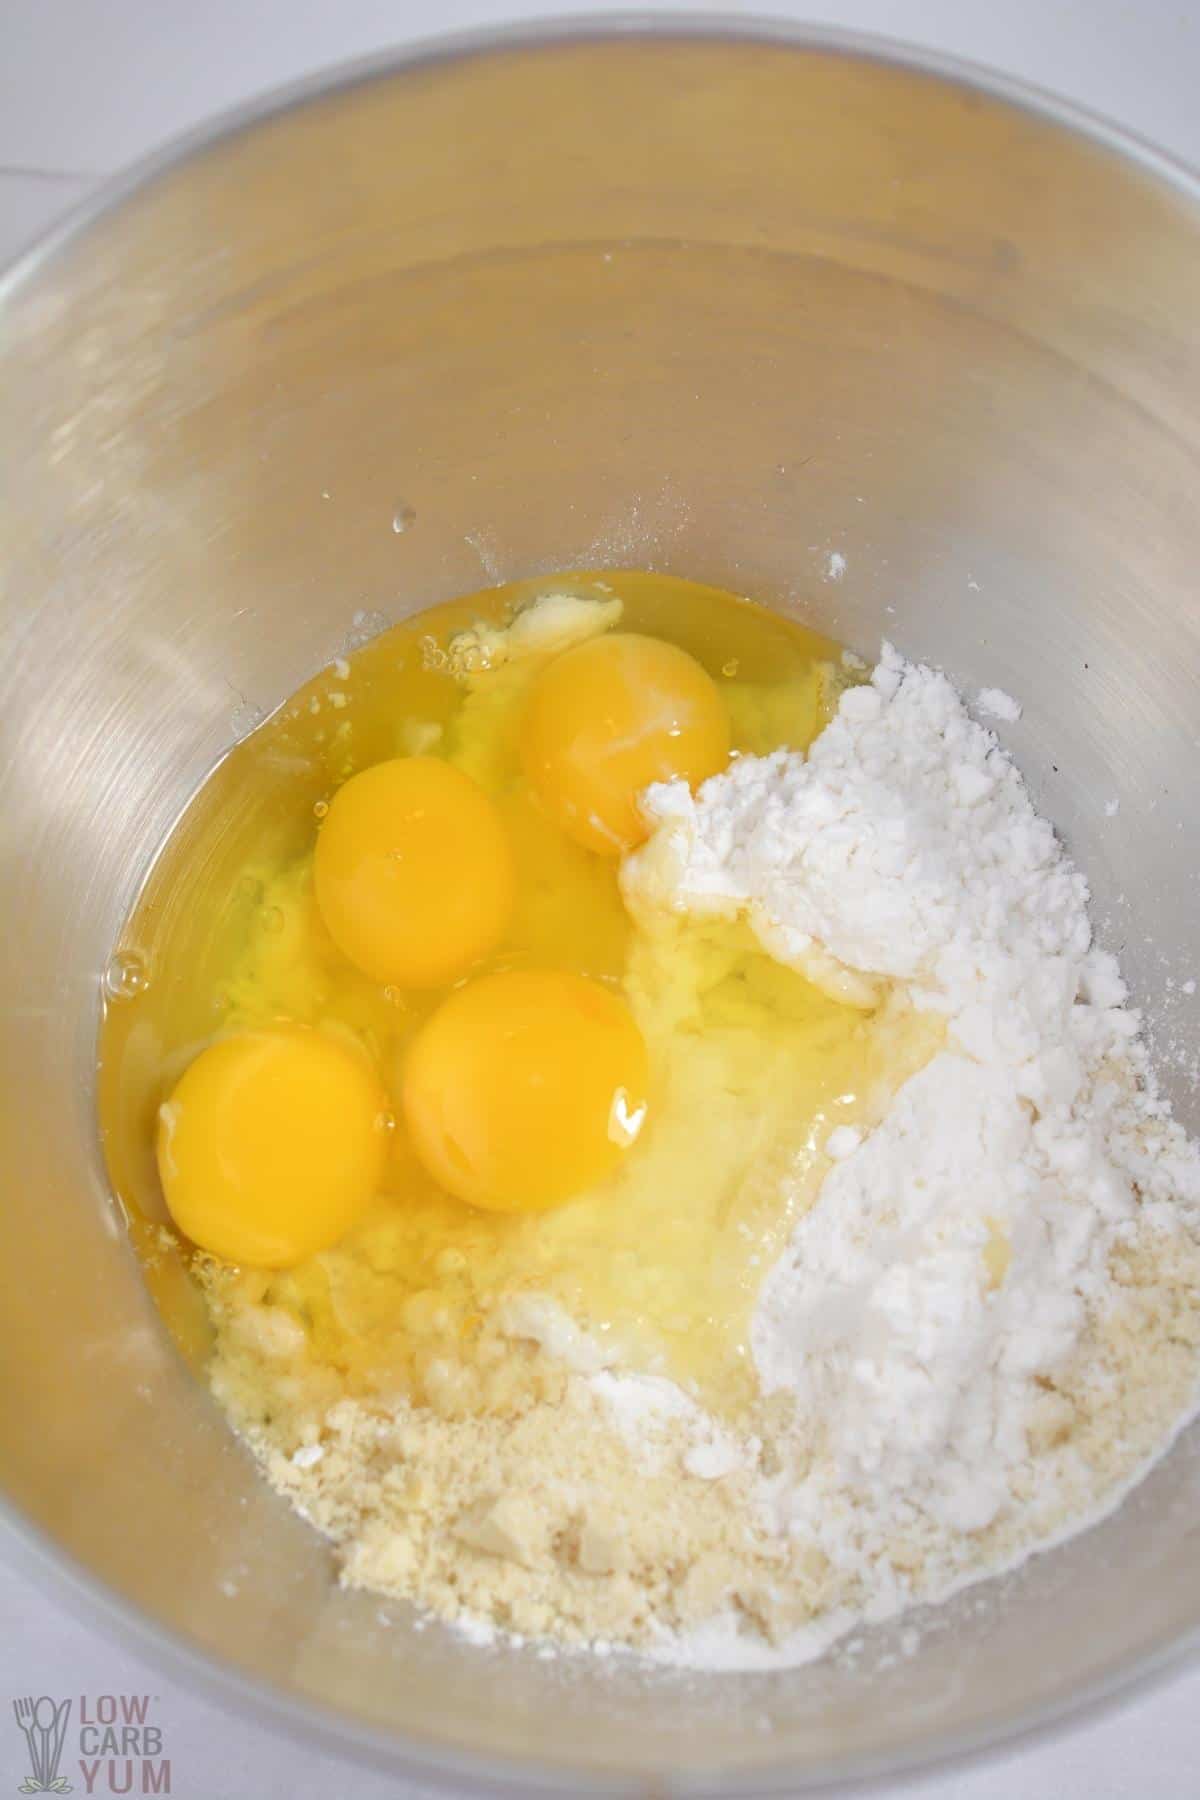 almond flour cake batter ingredients in metal mixing bowl.